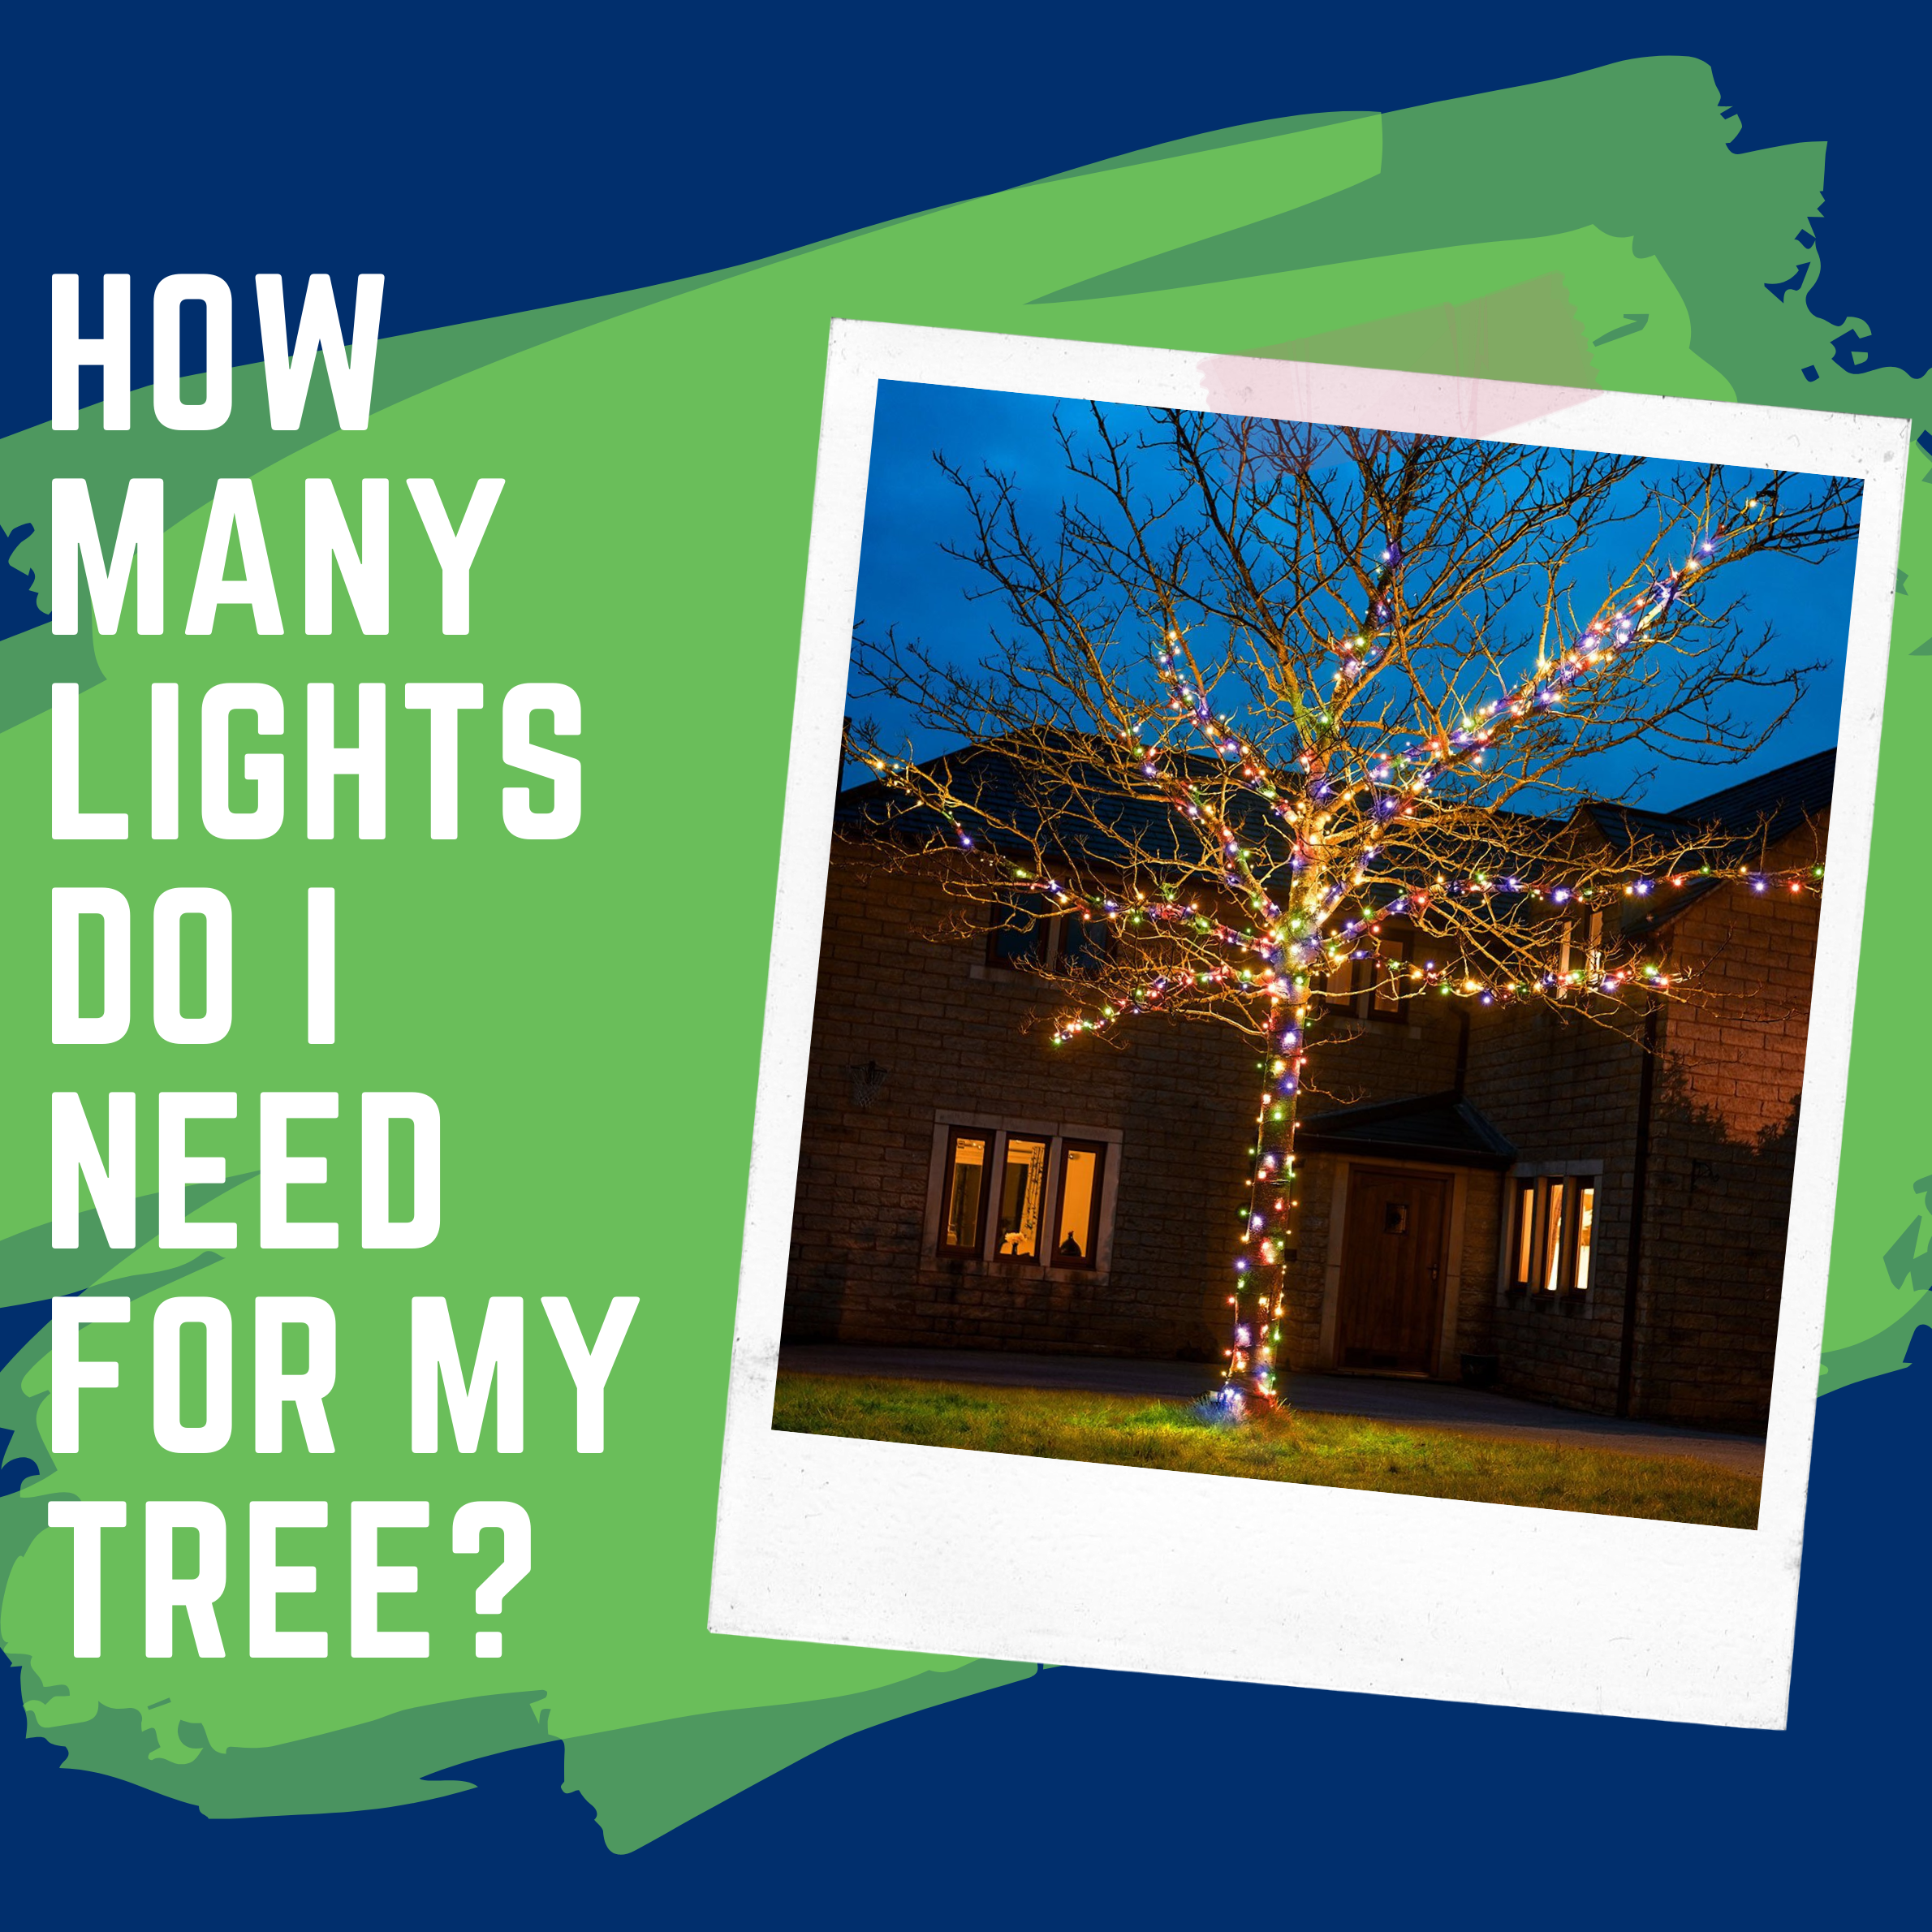 How many lights do I need on an outdoor tree?